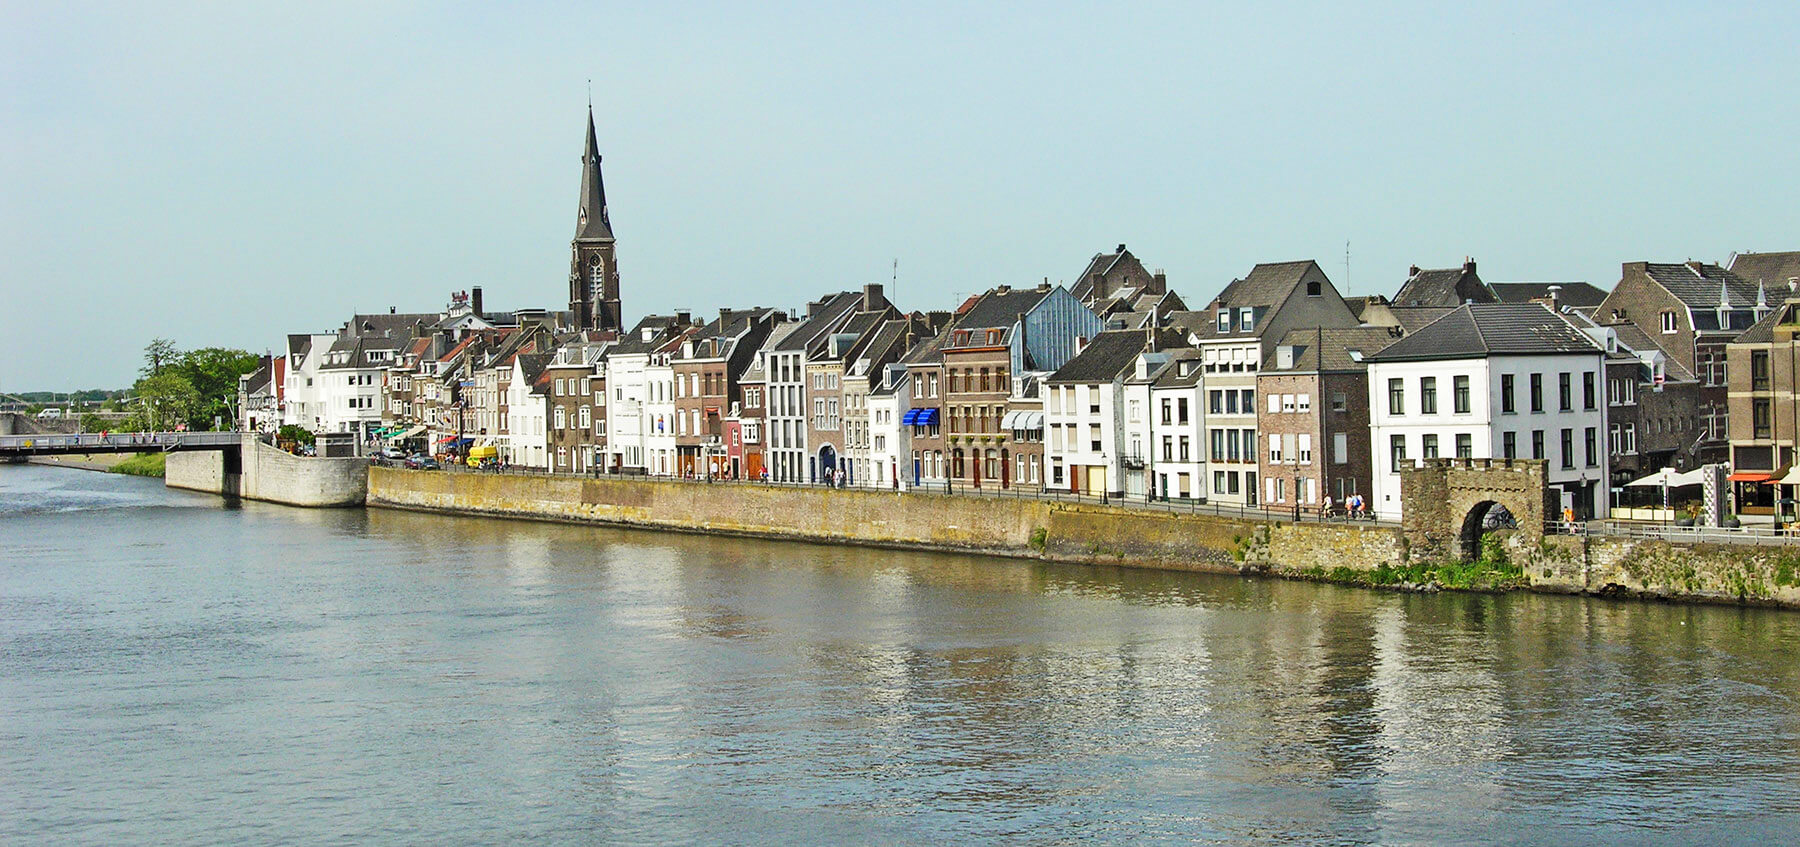 Cheap flights from Maastricht